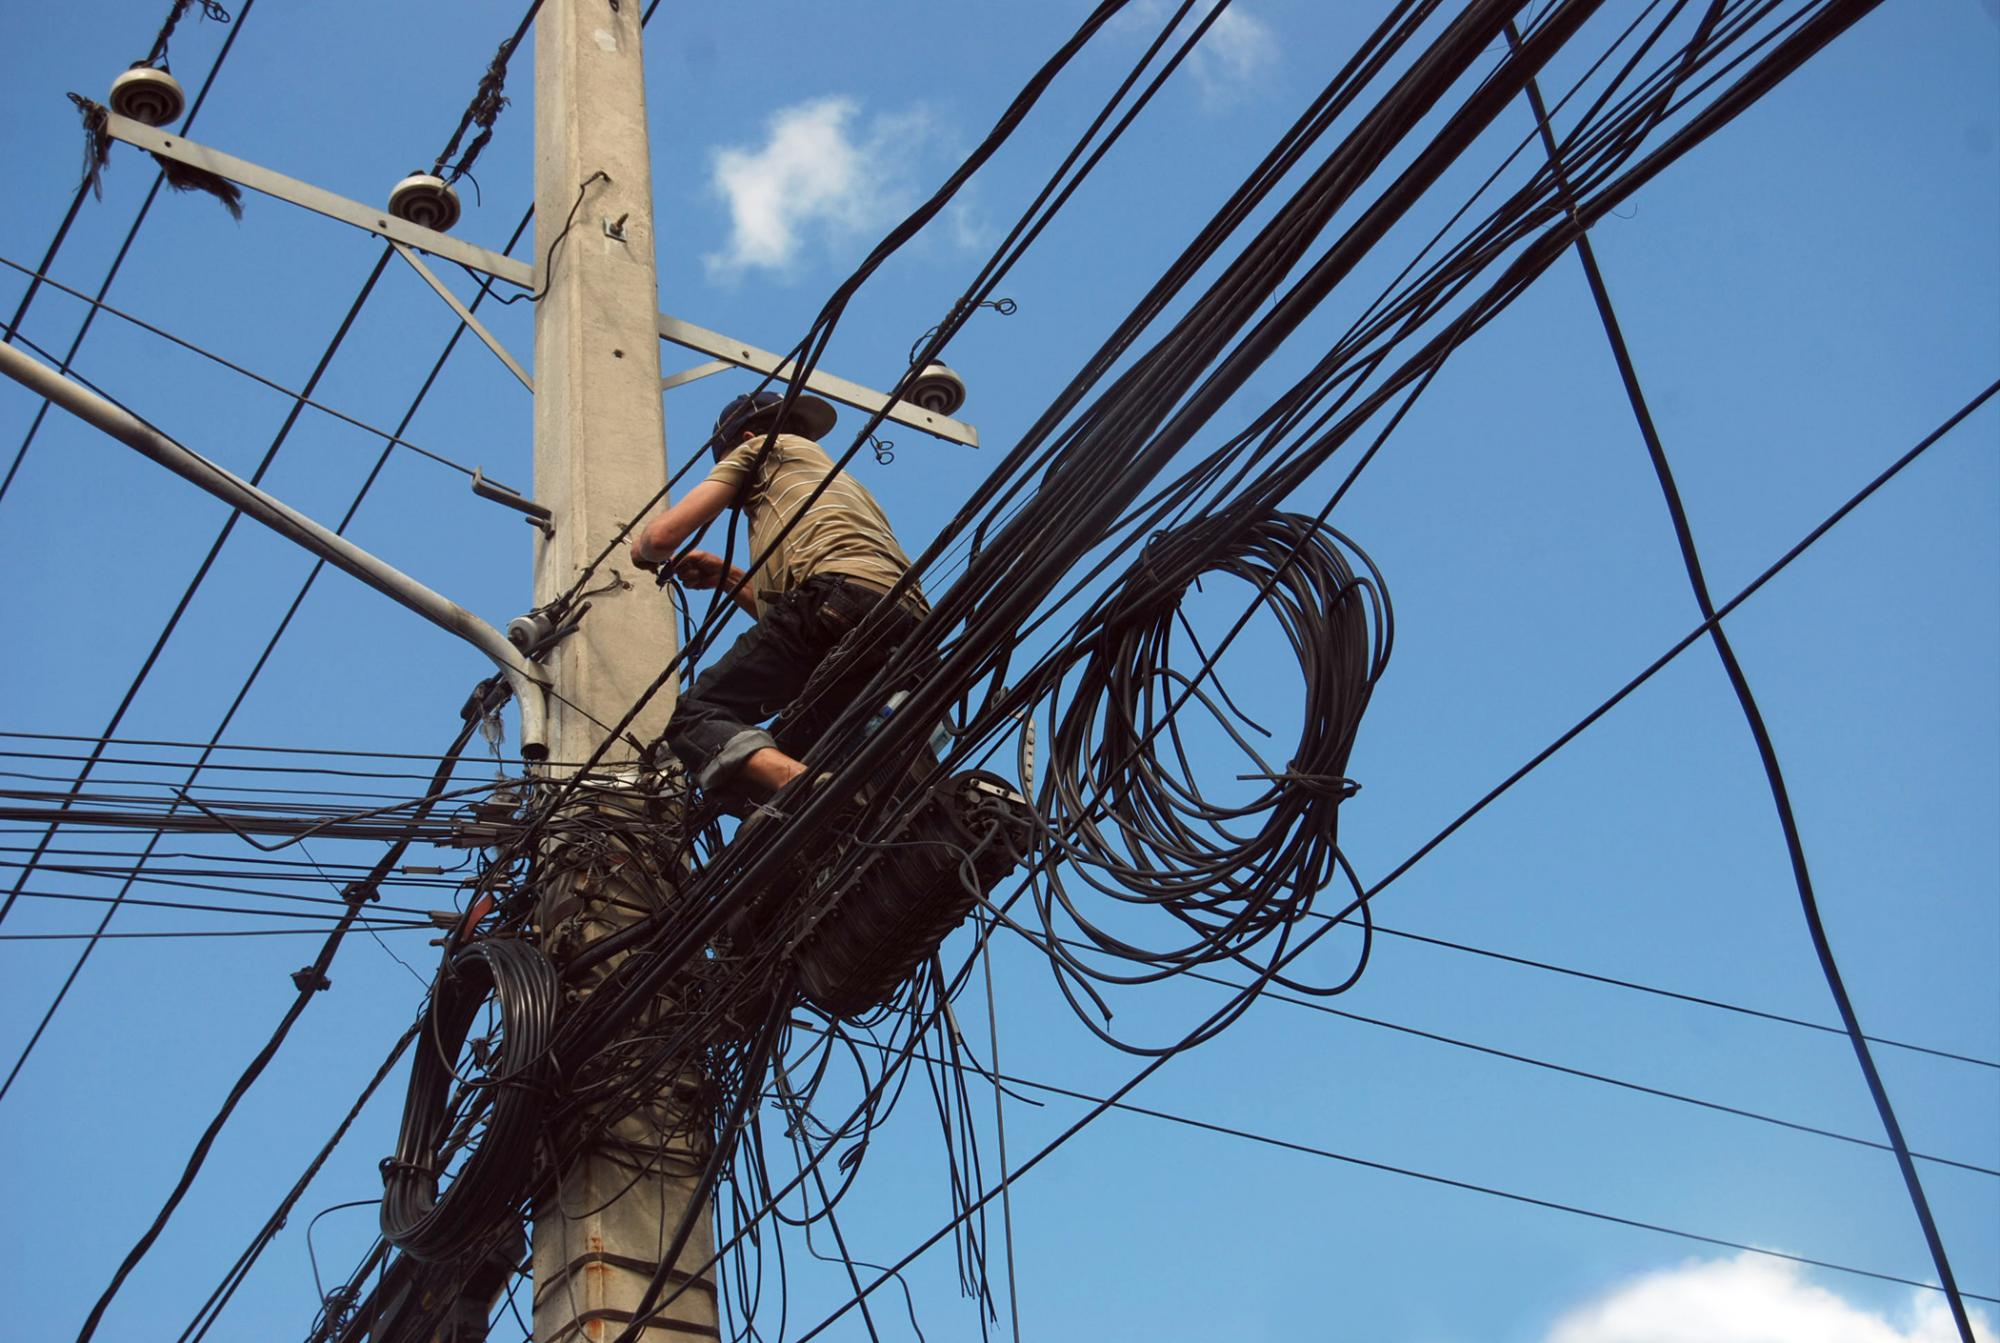 Pérdidas de energía eléctrica siguen aumentando en República Dominicana